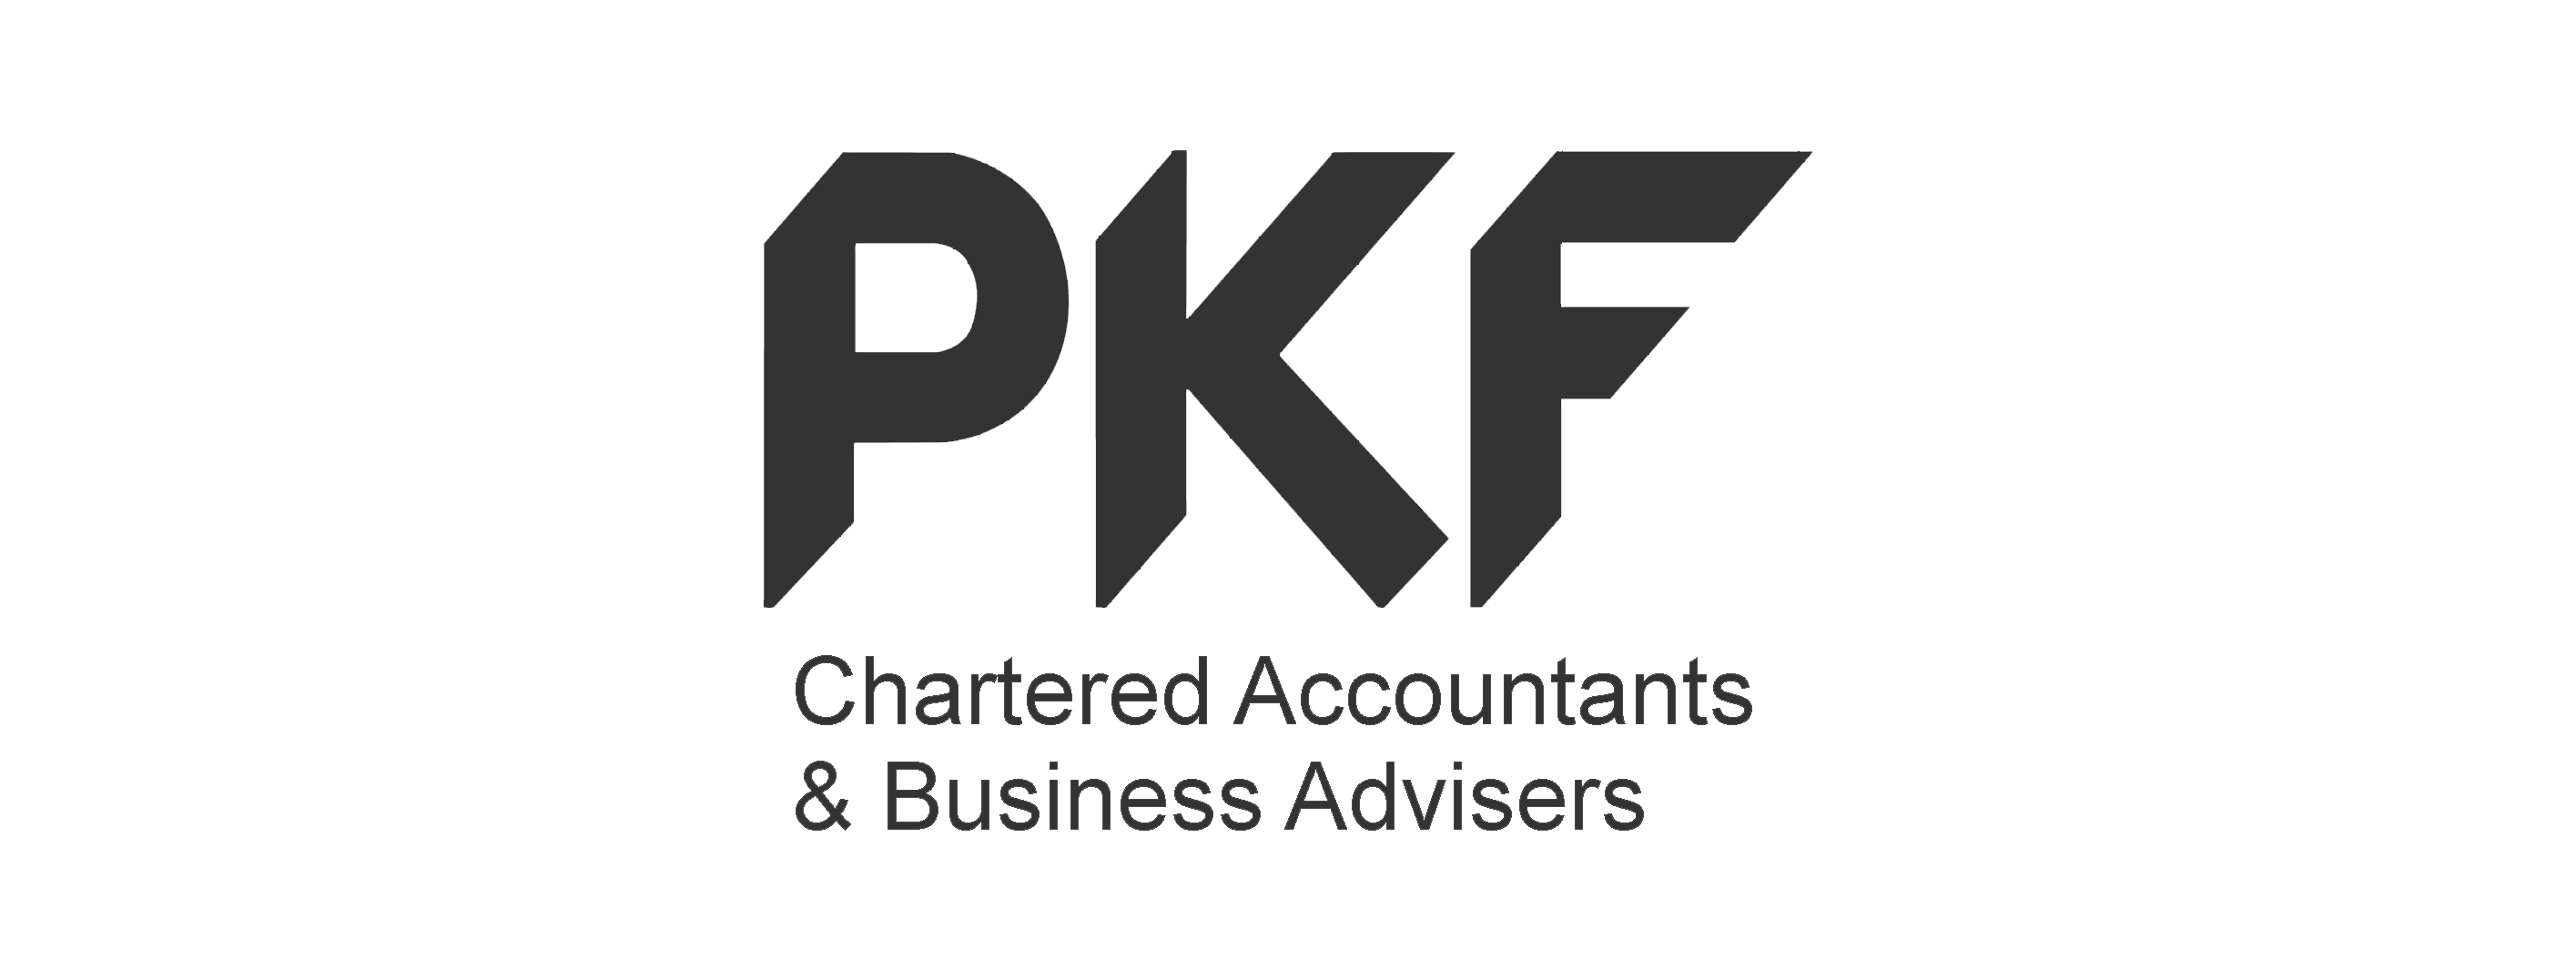 PKF-logo-1.png